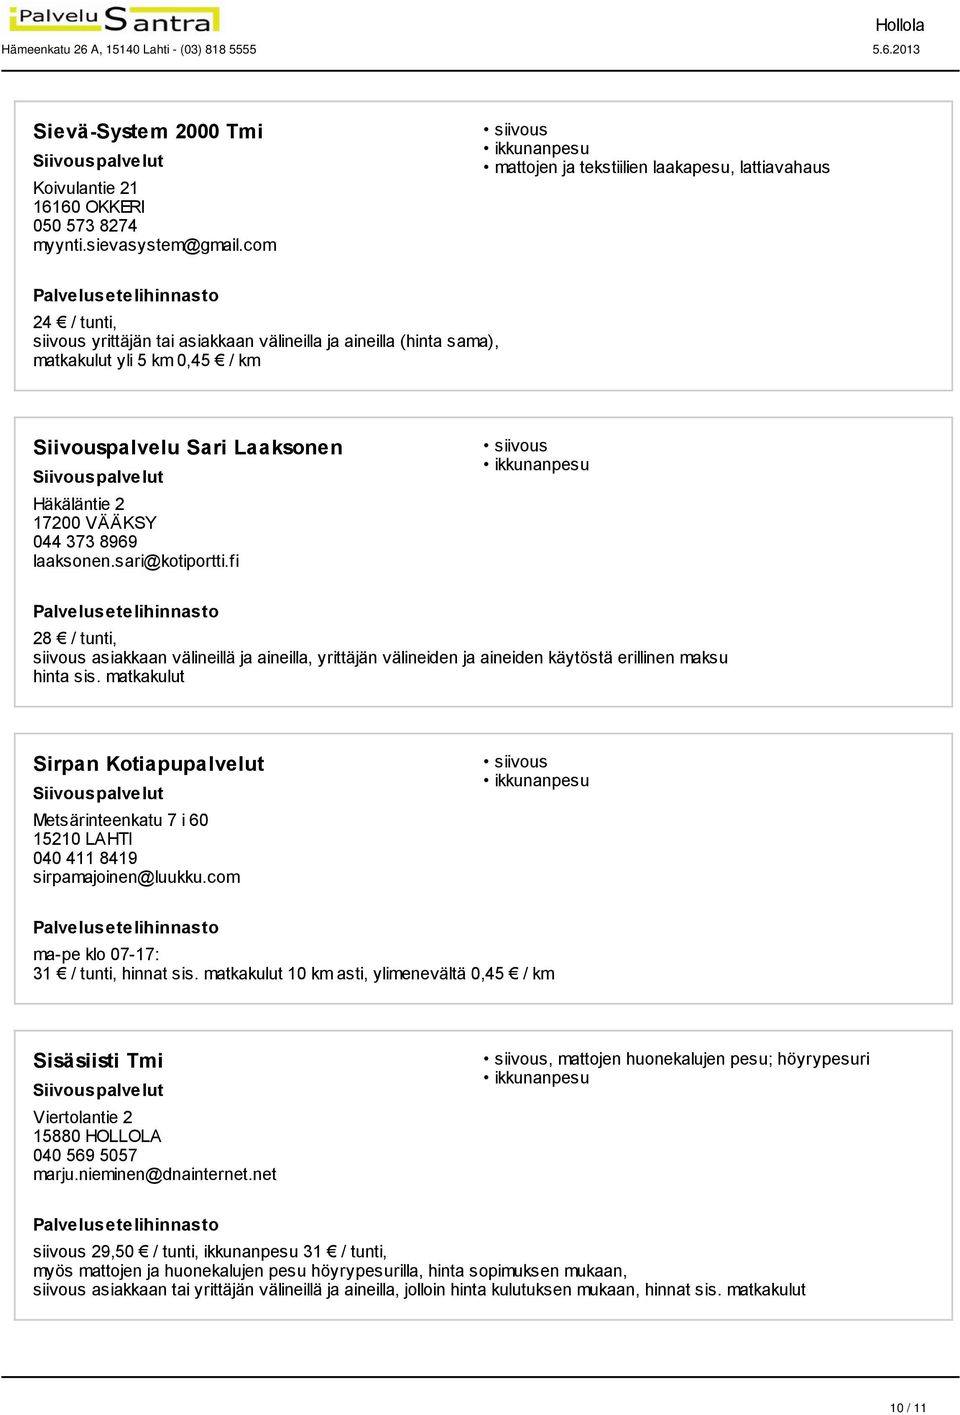 Häkäläntie 2 17200 VÄÄKSY 044 373 8969 laaksonen.sari@kotiportti.fi 28 / tunti, siivous asiakkaan välineillä ja aineilla, yrittäjän välineiden ja aineiden käytöstä erillinen maksu hinta sis.